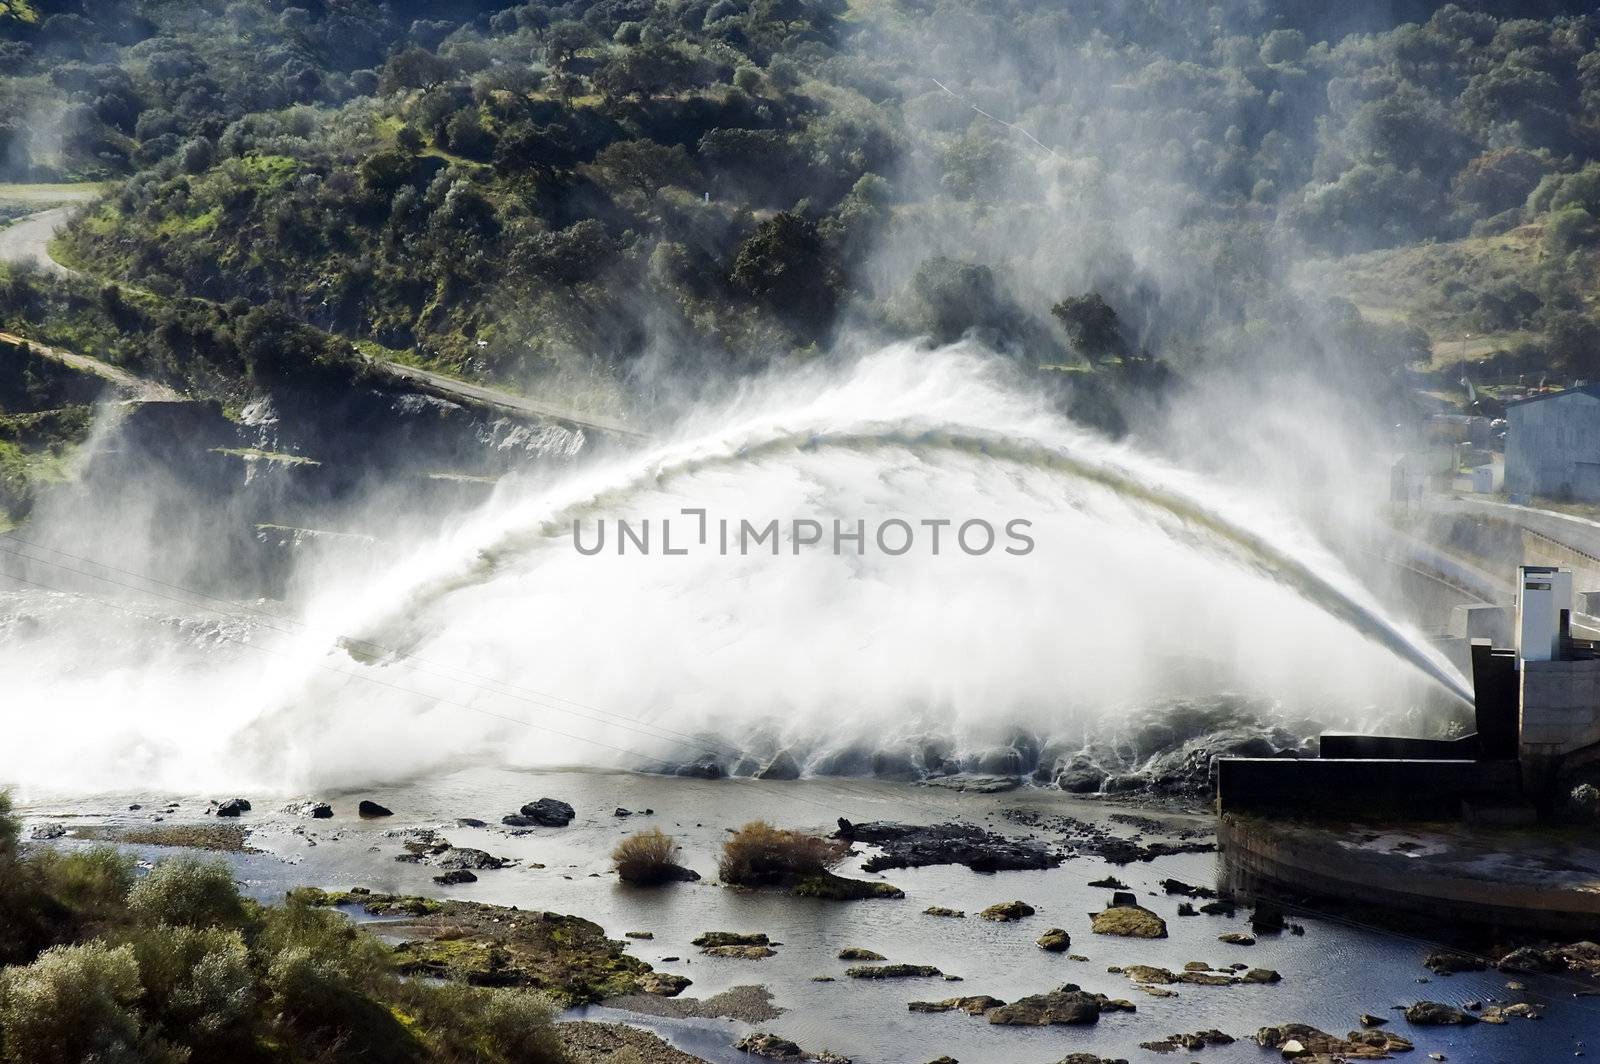 Huge water discharge in Alqueva dam, Portugal